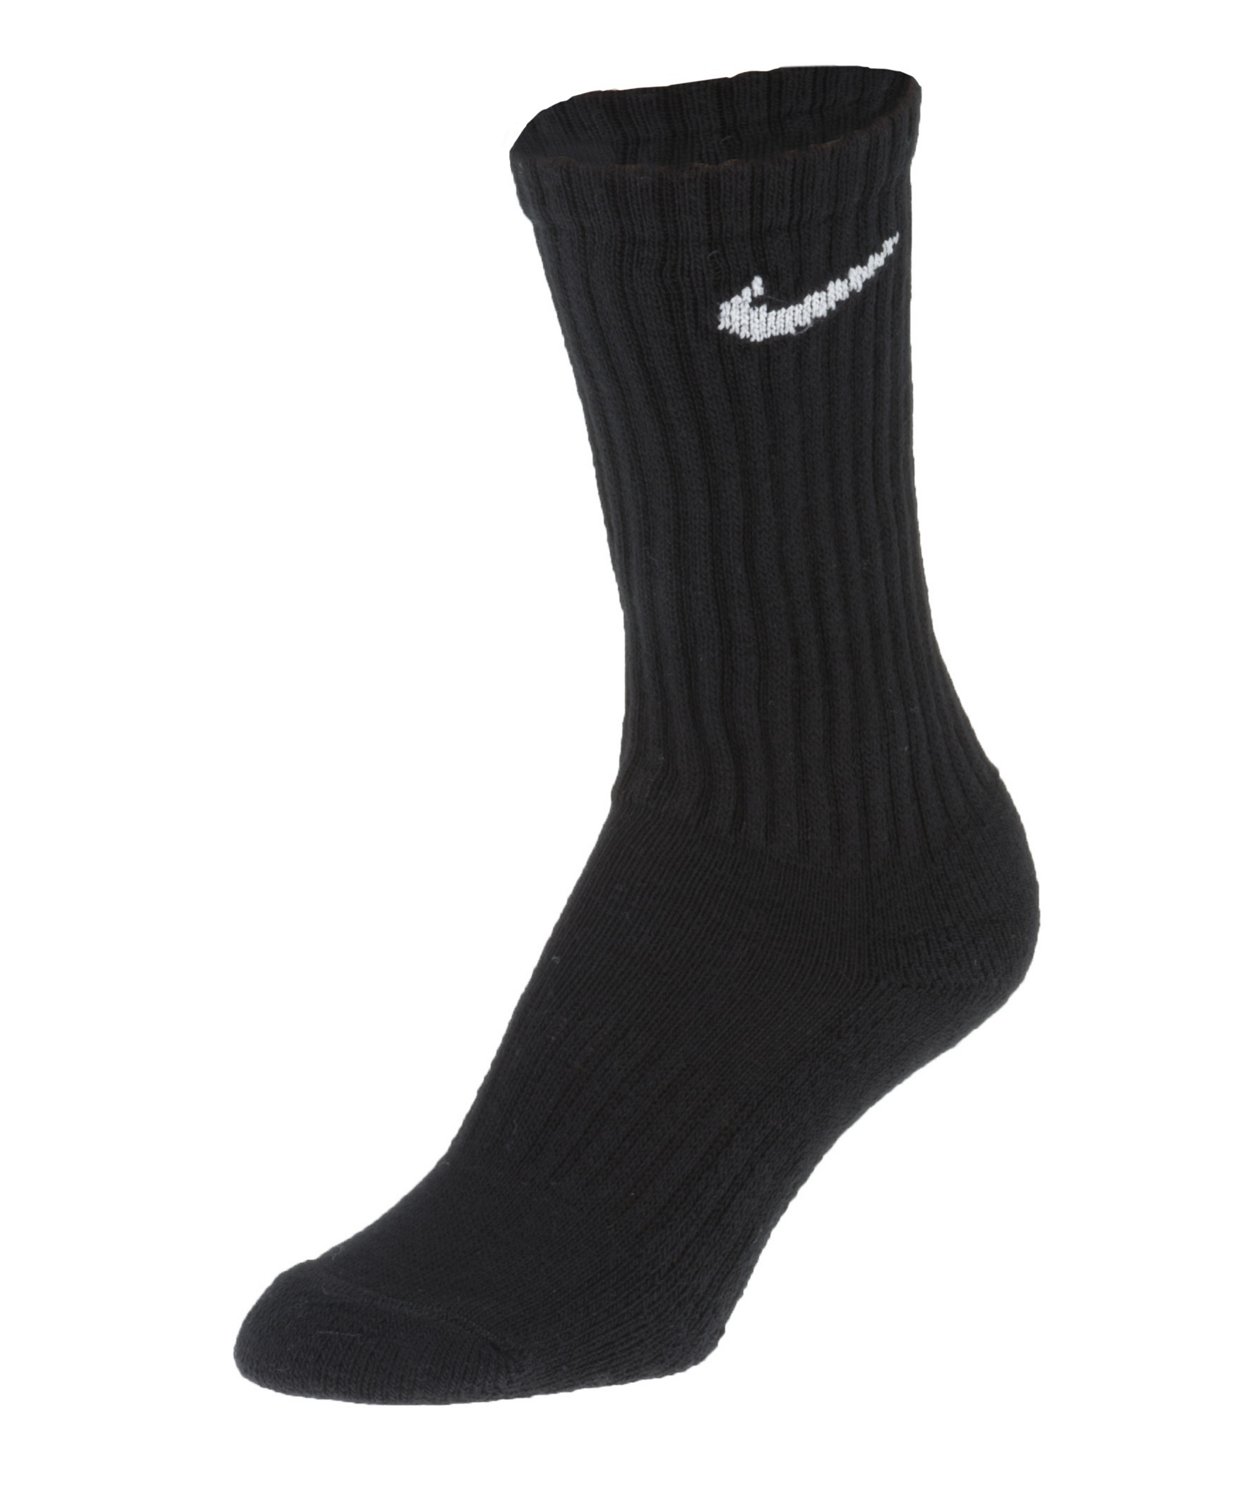 Best socks for skating